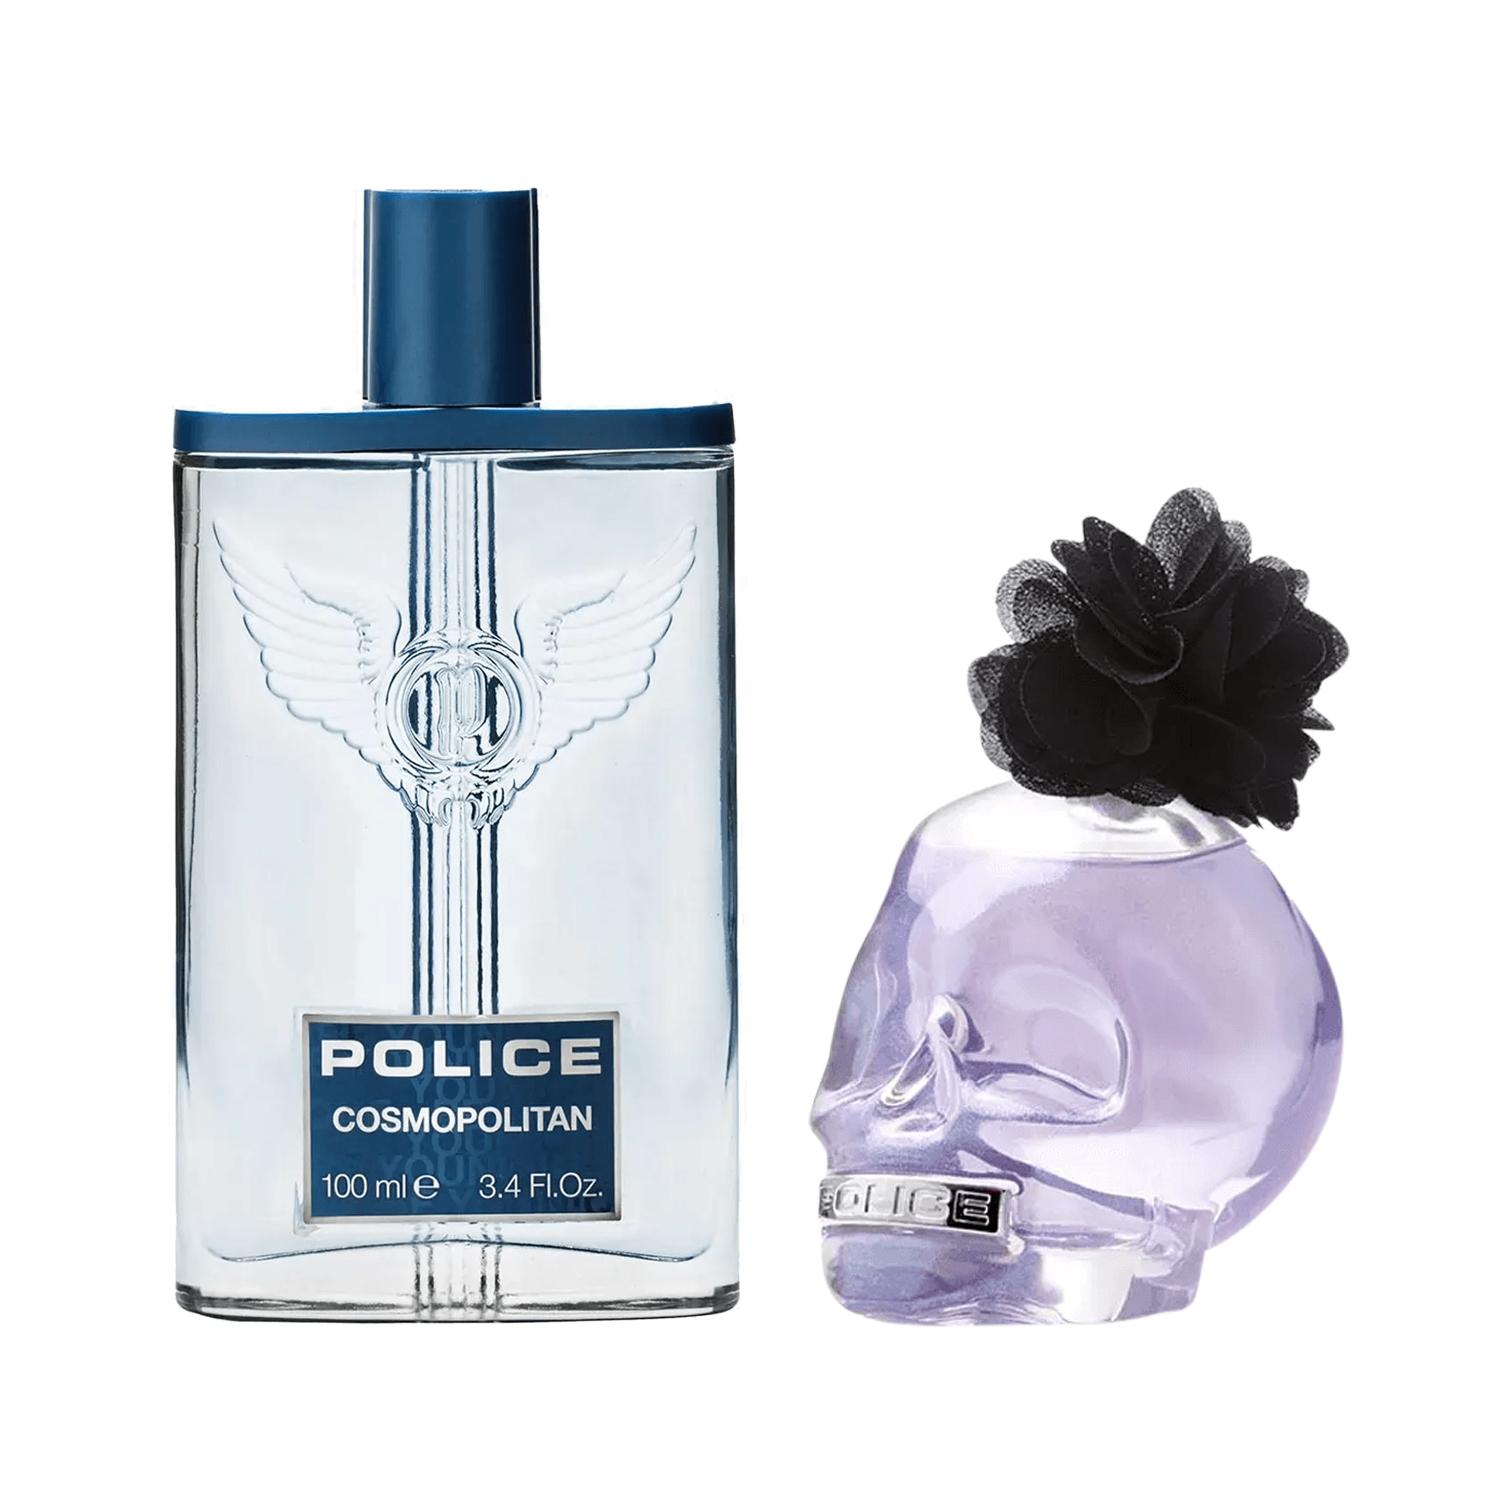 Police | Police Cosmopolitan + To Be Rose Combo